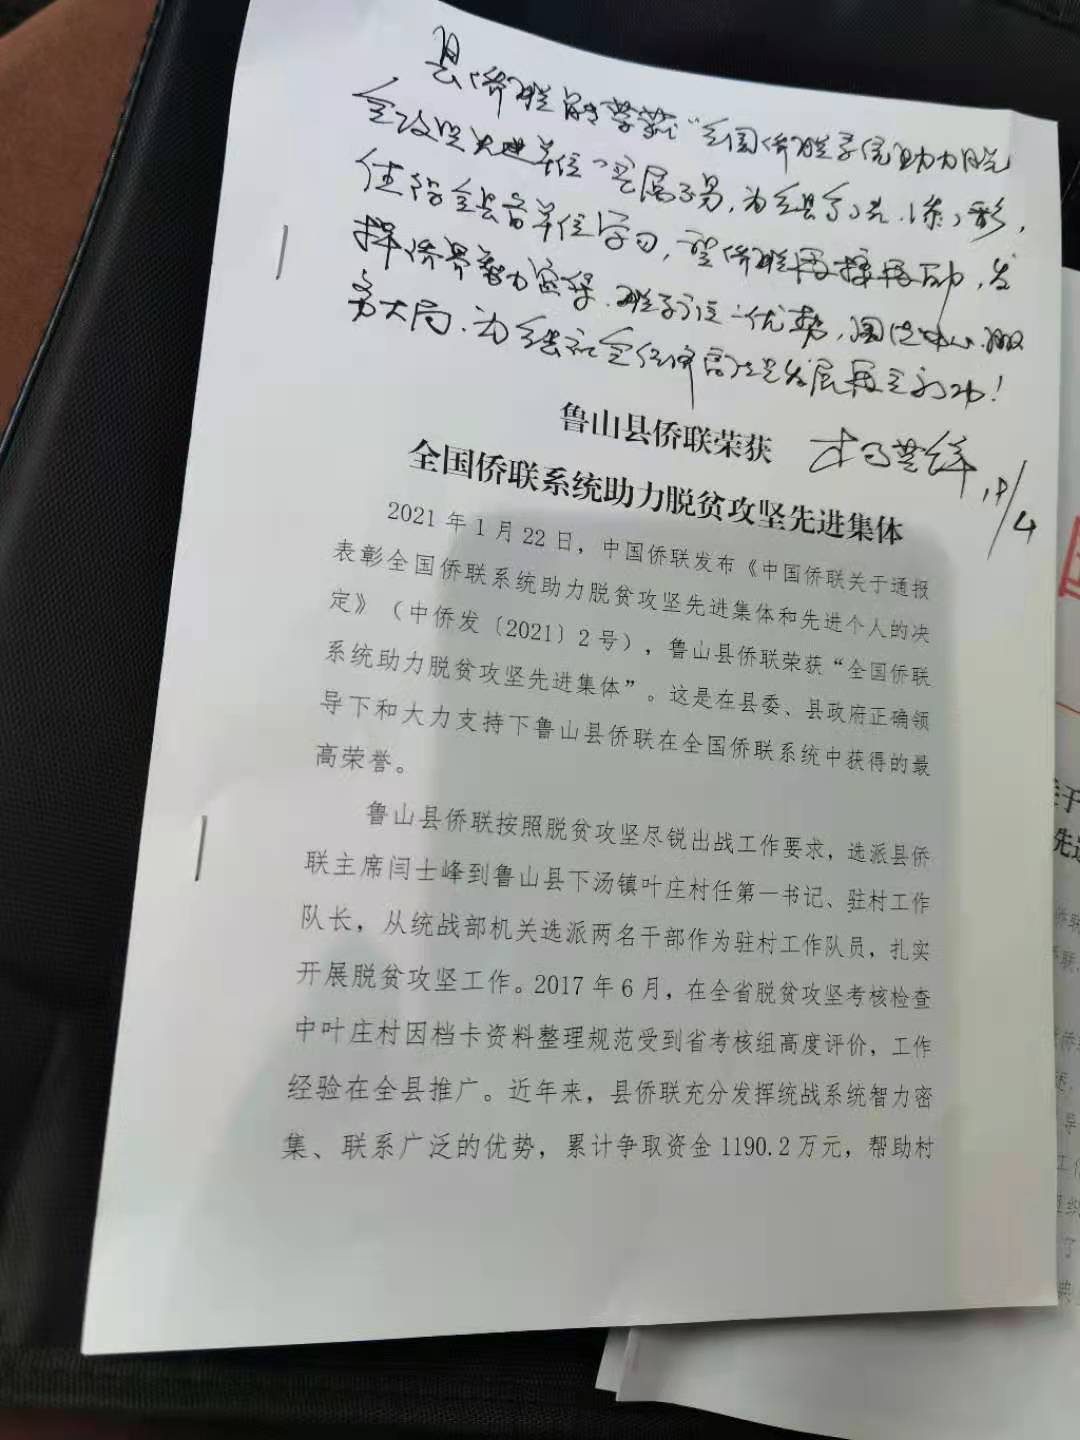 鲁山县侨联工作得到县委书记指示.jpg